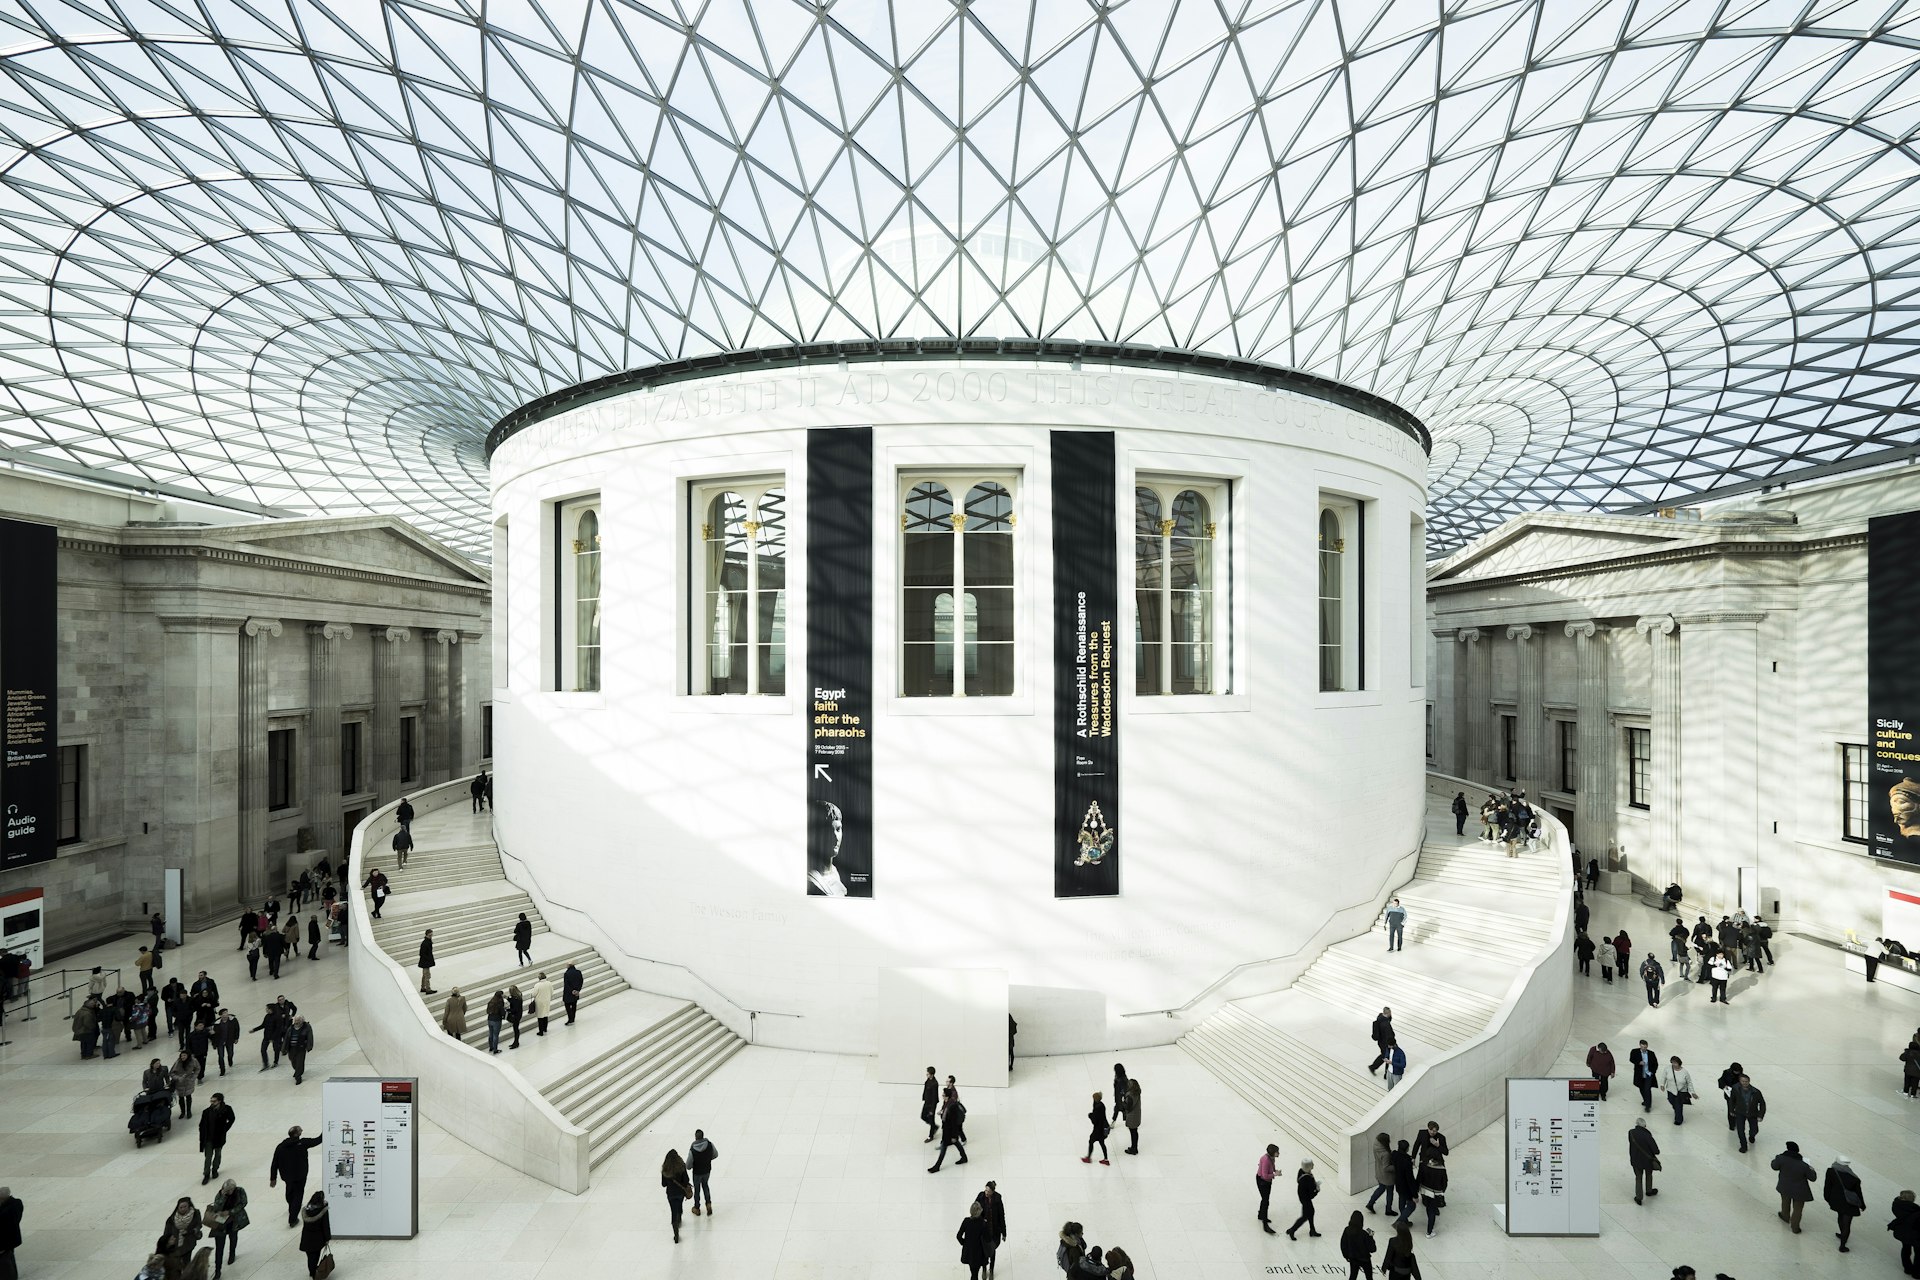 The British Museum interior